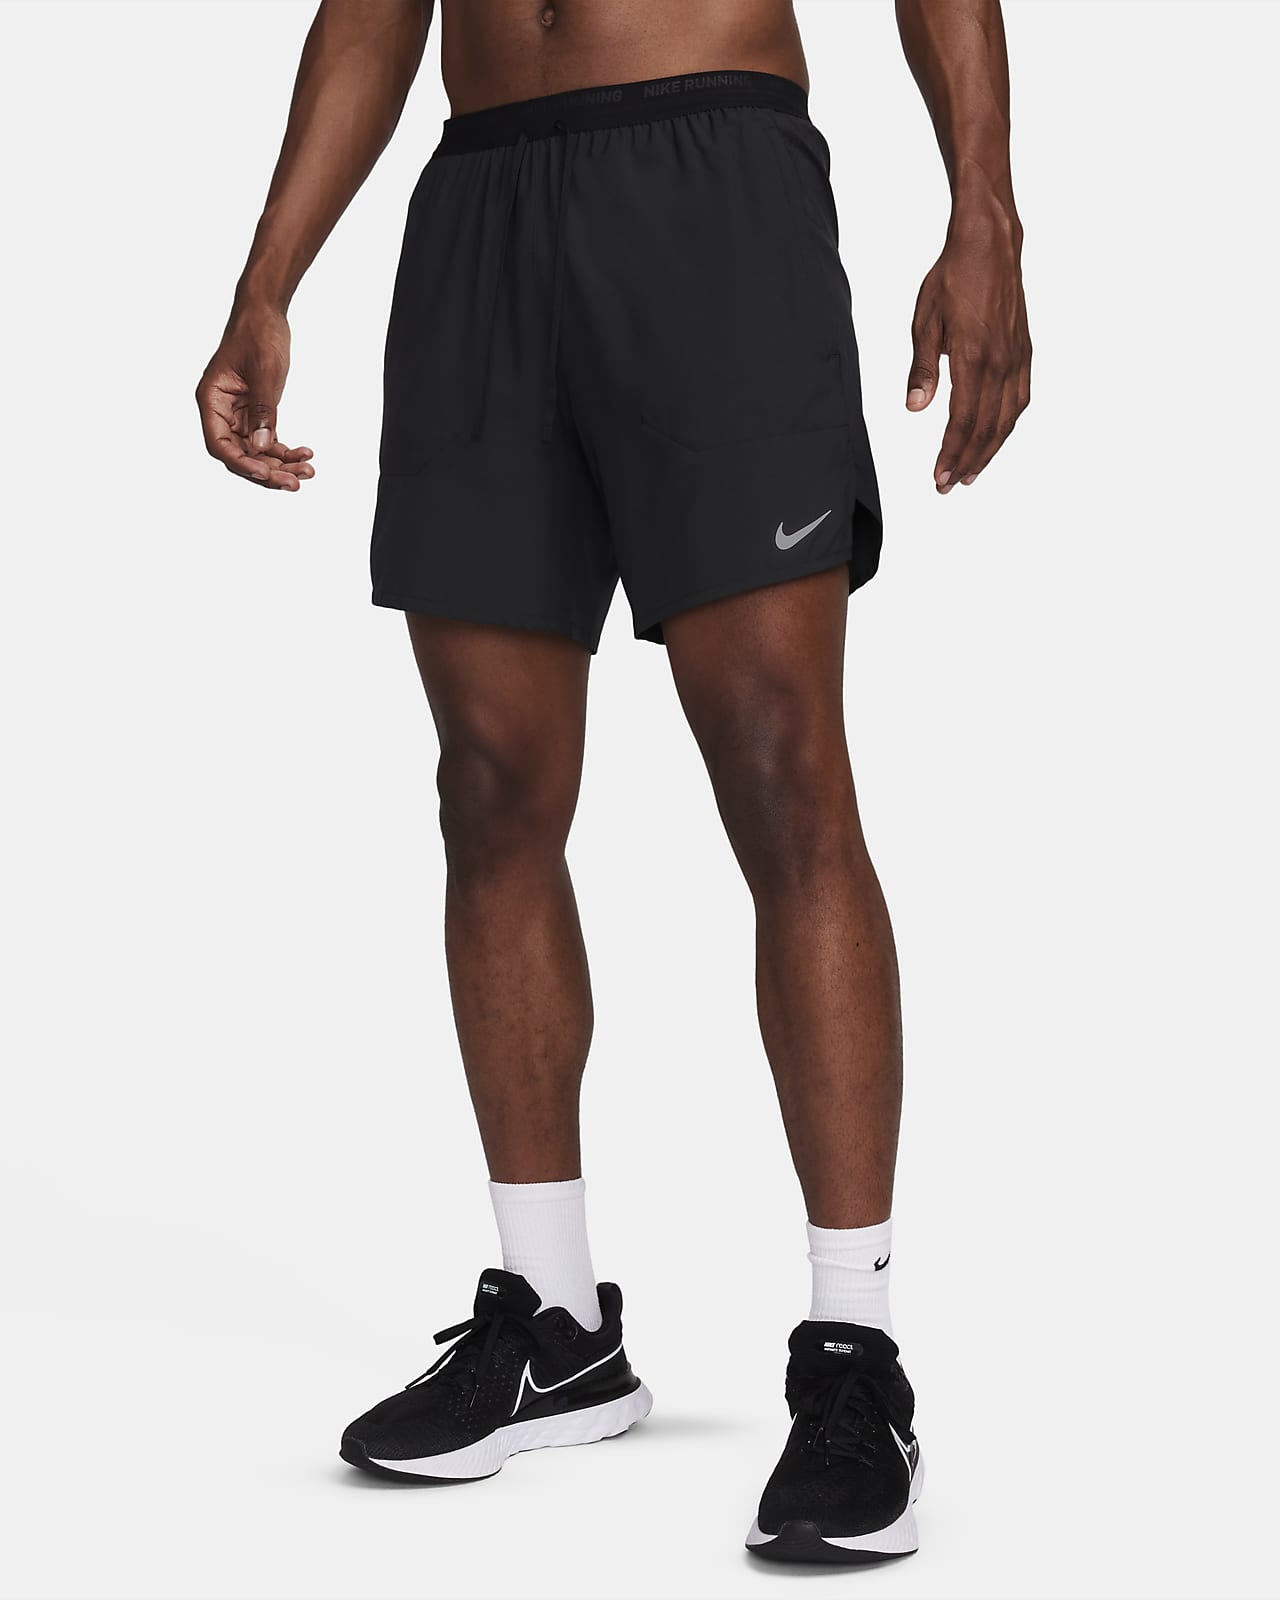 Calções de running 2 em 1 de 18 cm Dri-FIT Nike Stride para homem